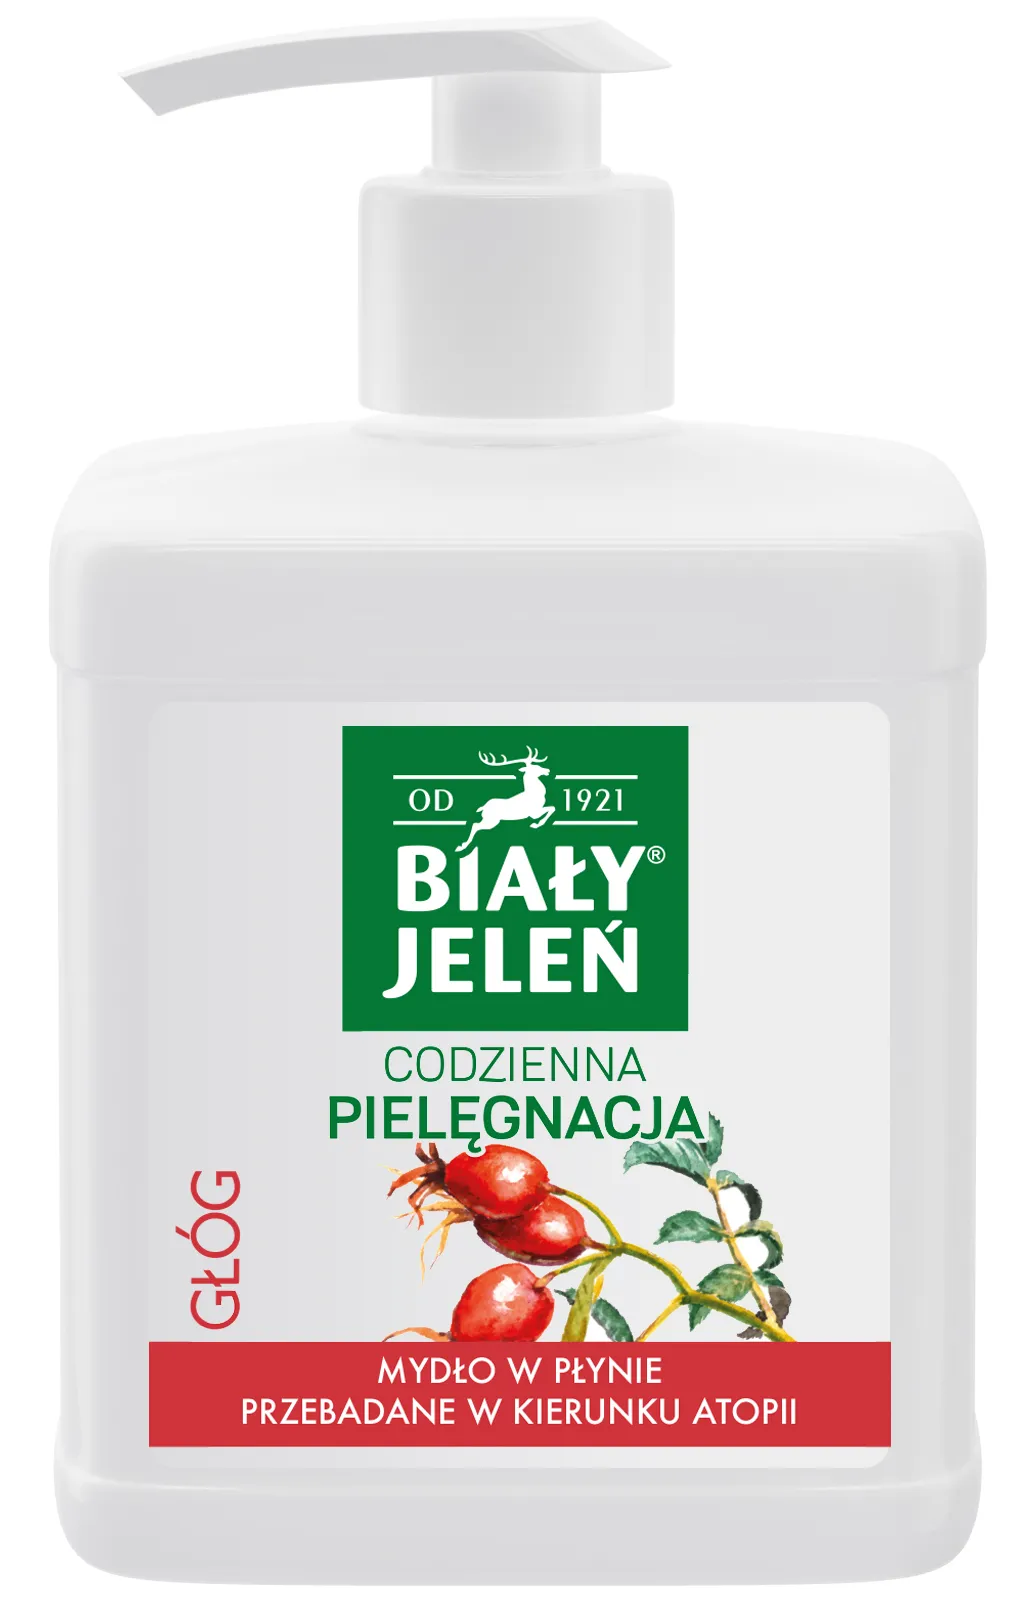 Biały Jeleń Premium, hipoalergiczne mydło w płynie z głogiem, 500 ml